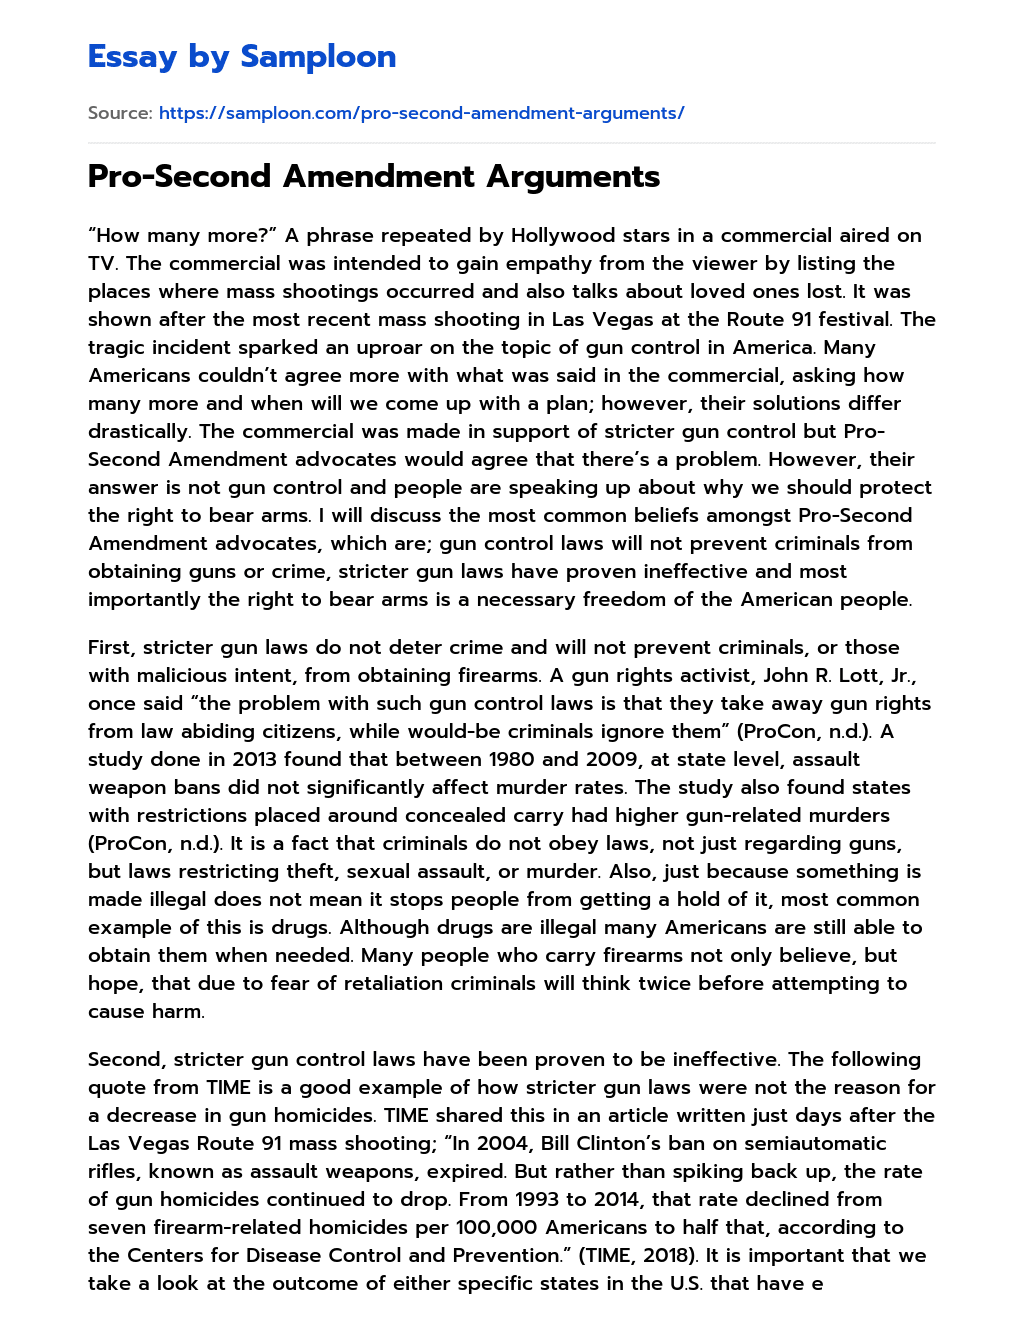 Pro-Second Amendment Arguments essay